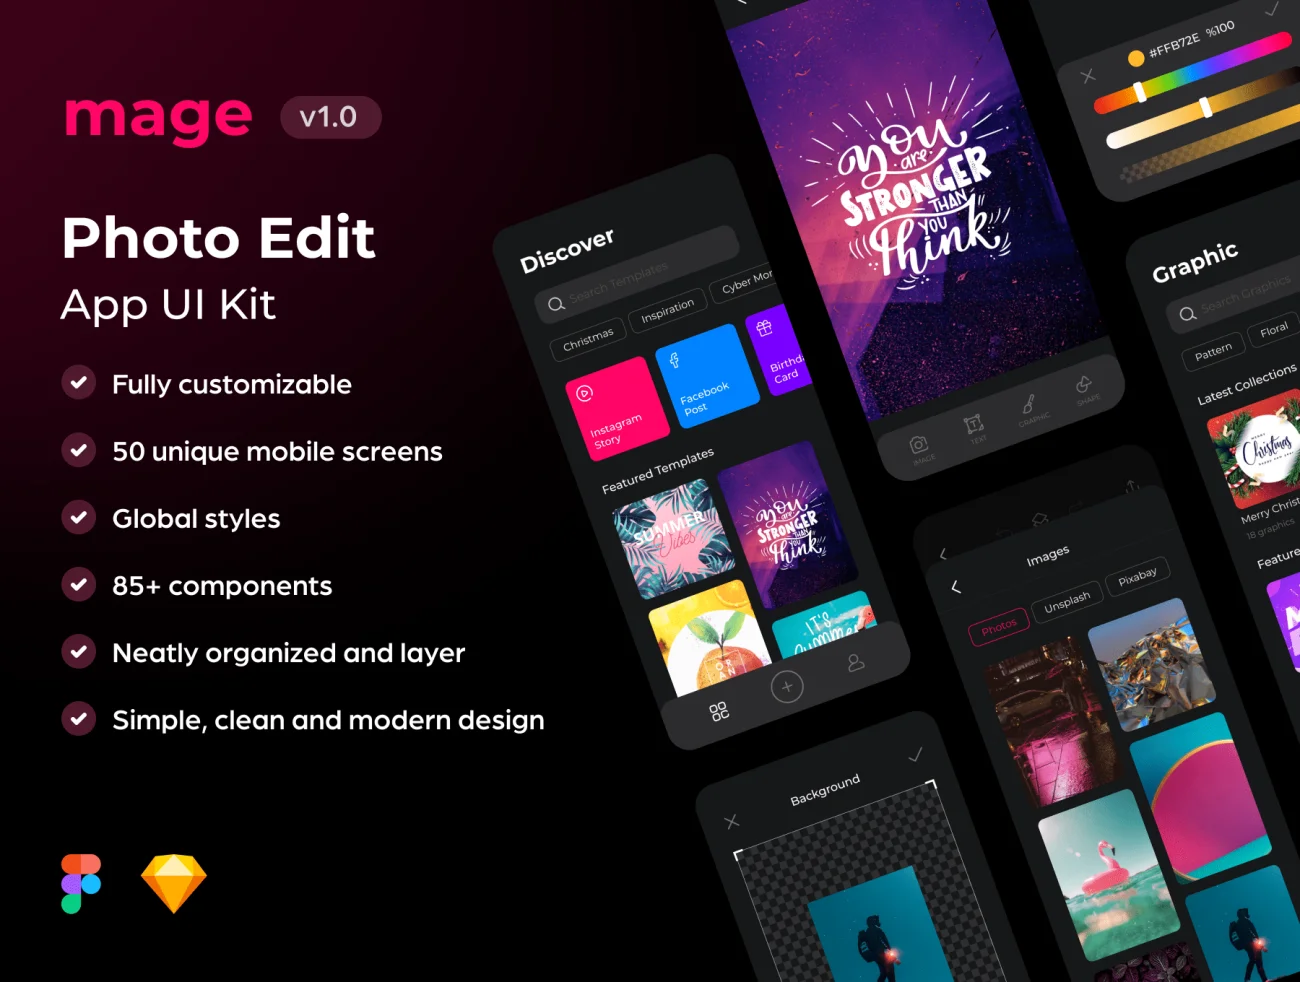 50屏图片编辑应用UI设计套件 Mage Photo Edit App UI Kit-UI/UX、ui套件、主页、列表、卡片式、应用、播放器-到位啦UI